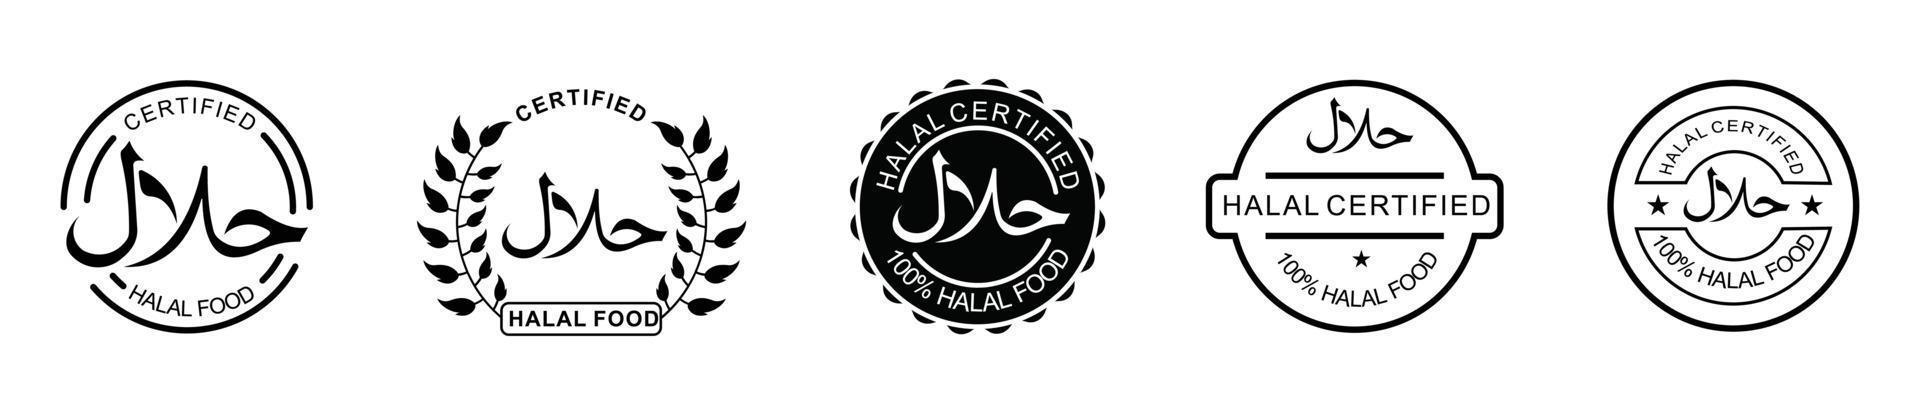 halal icon set produto emblema ilustração vetorial. conjunto de rótulos de produtos alimentares halal, etiqueta de certificado de sinal halal vetorial. vetor